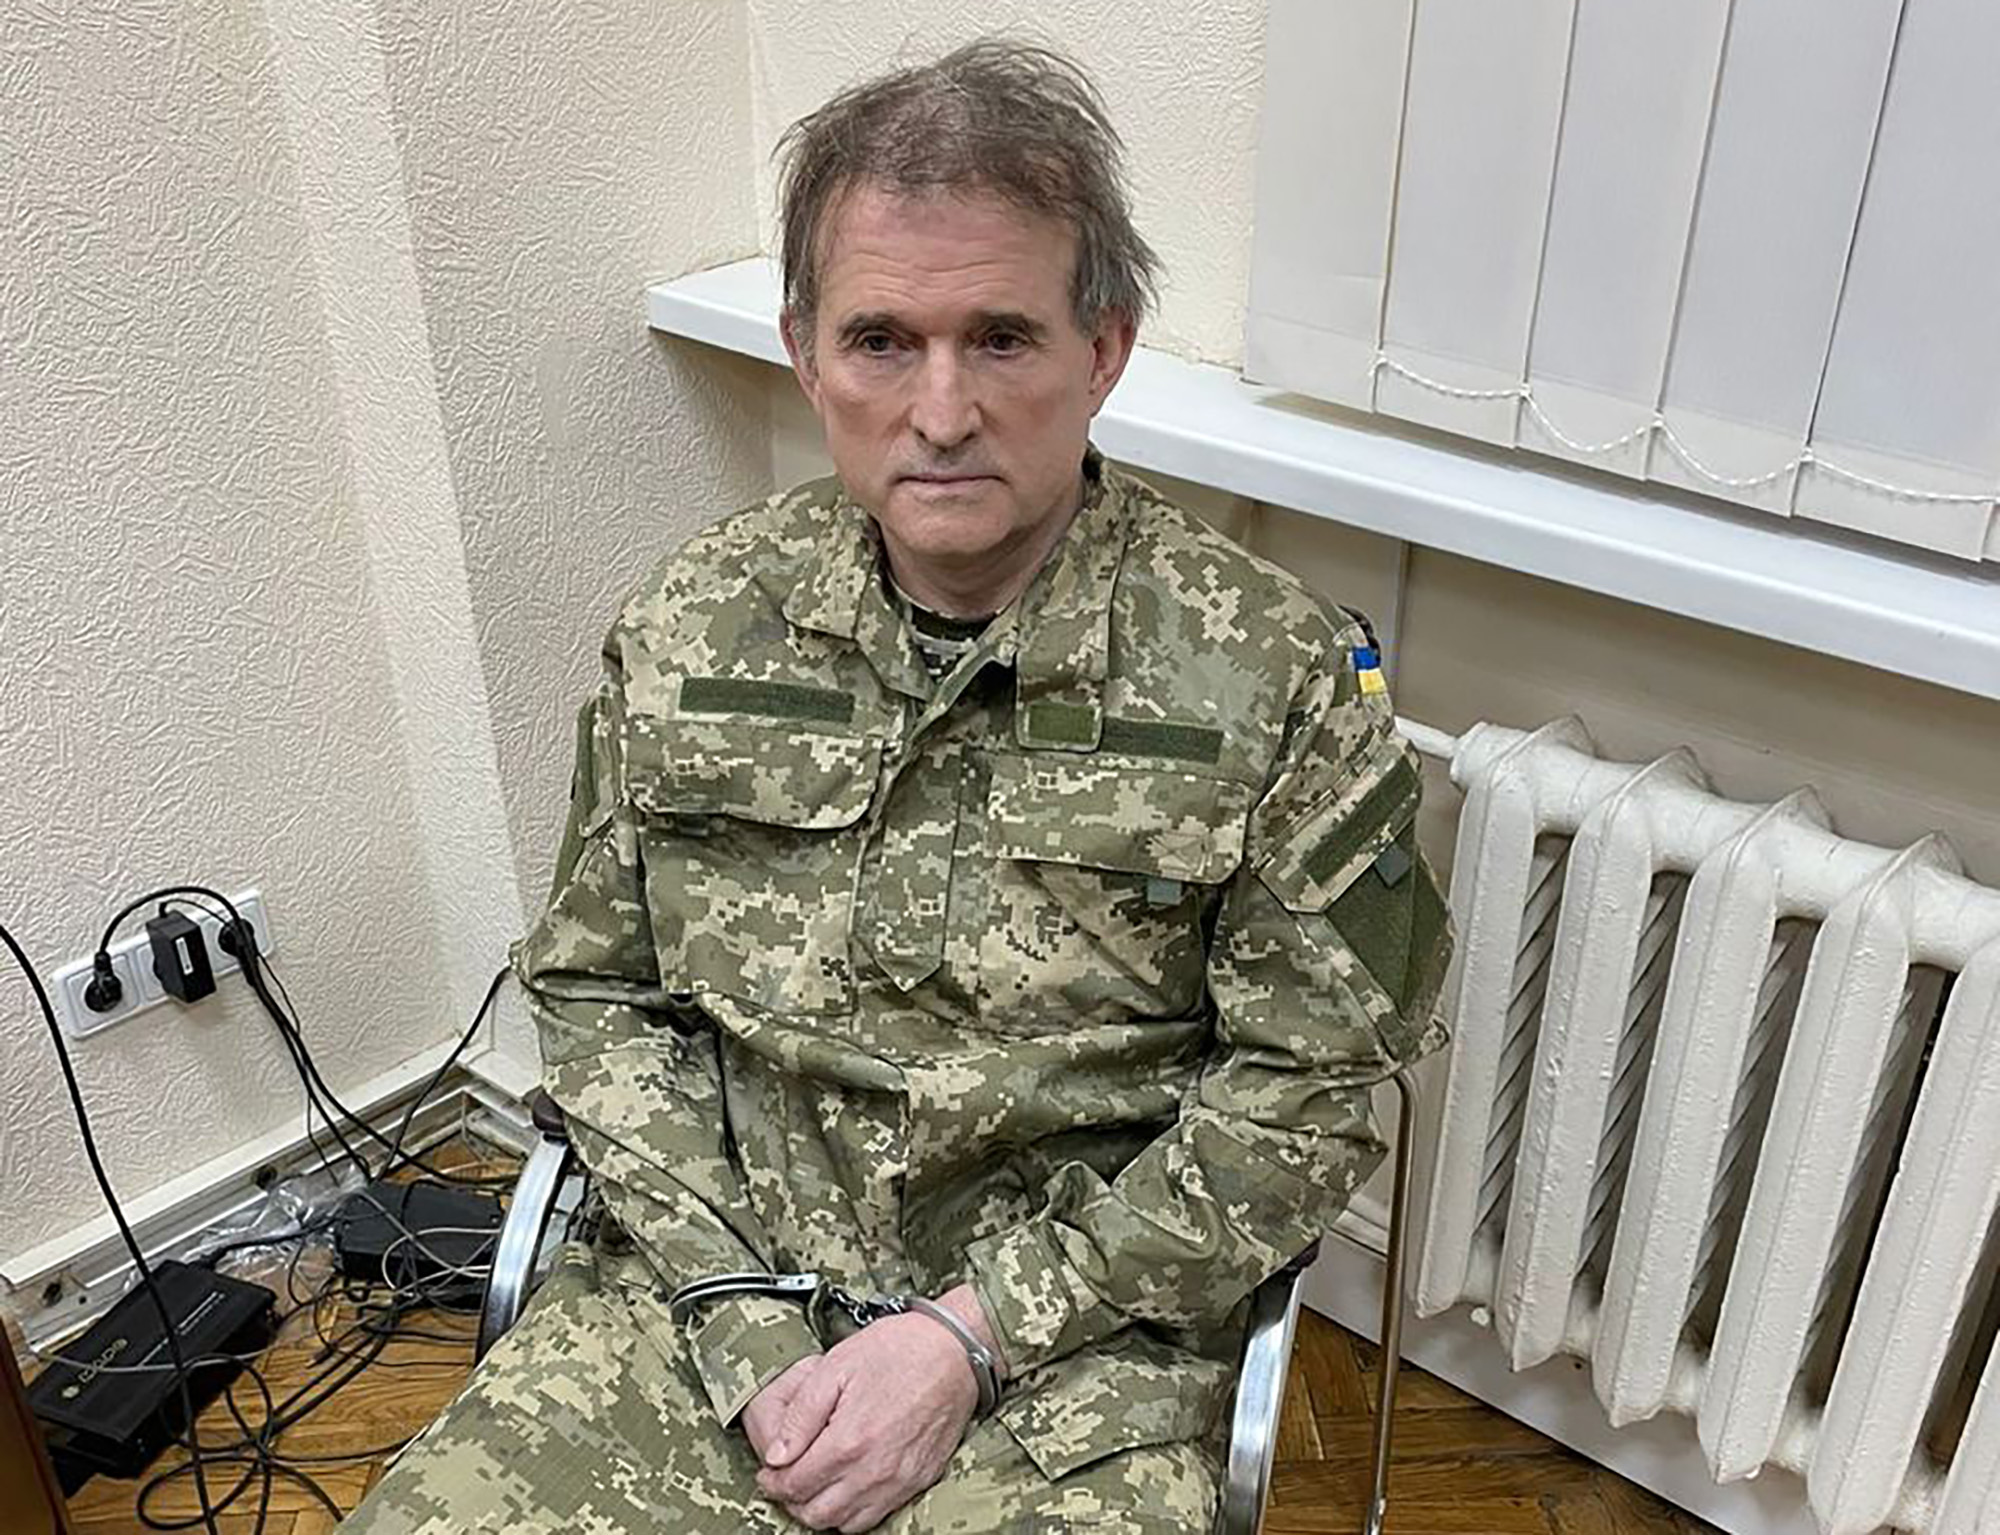 El oligarca fugitivo Viktor Medvedchuk se sienta en una silla con las manos atadas después de una operación especial realizada por el Servicio de Seguridad de Ucrania el 12 de abril.